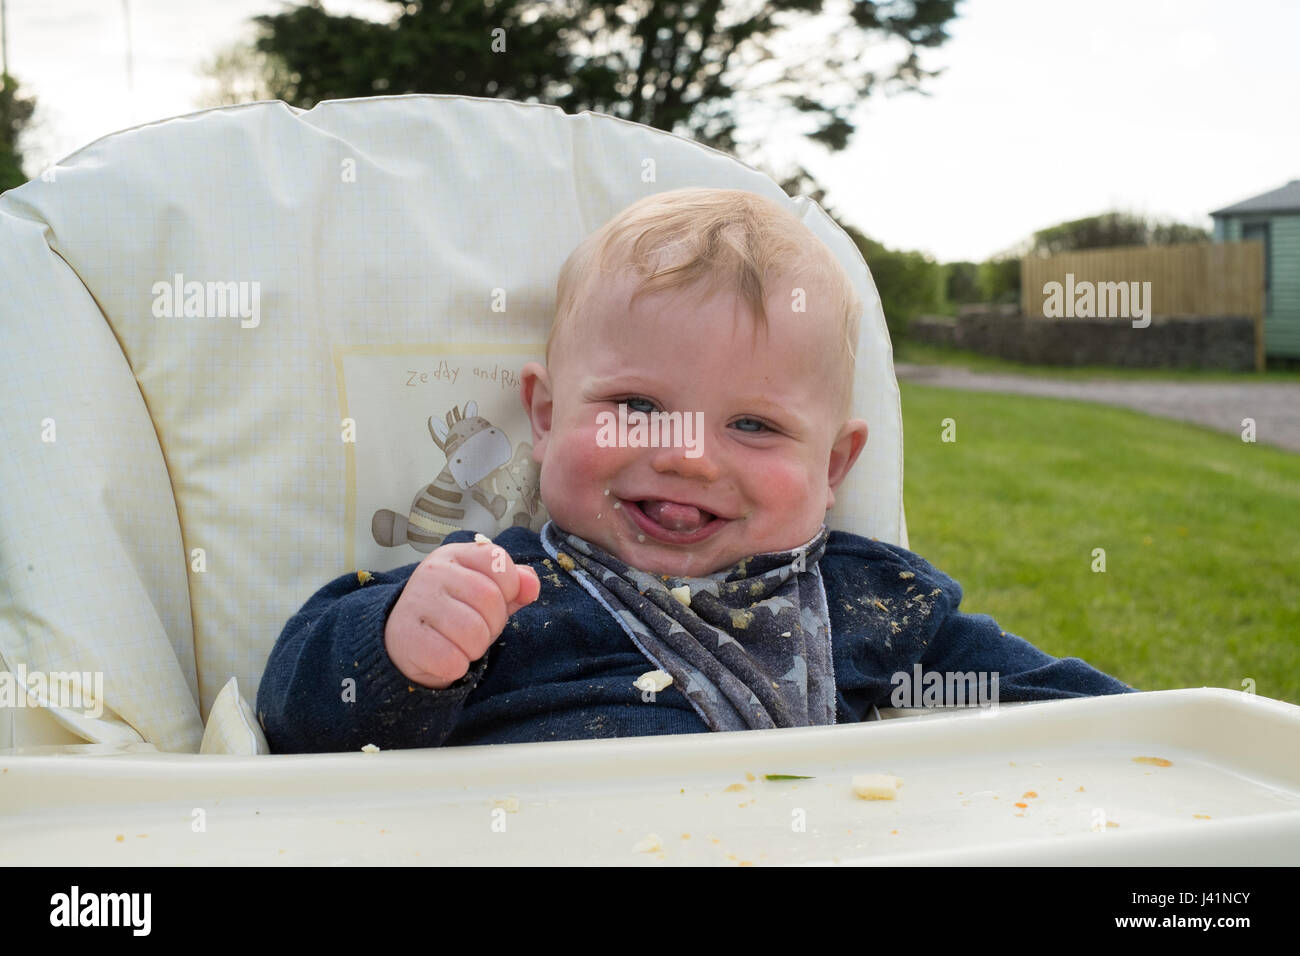 Bébé de sept mois sous chaise haute, Hope Cove, Devon, Angleterre, Royaume-Uni. Banque D'Images